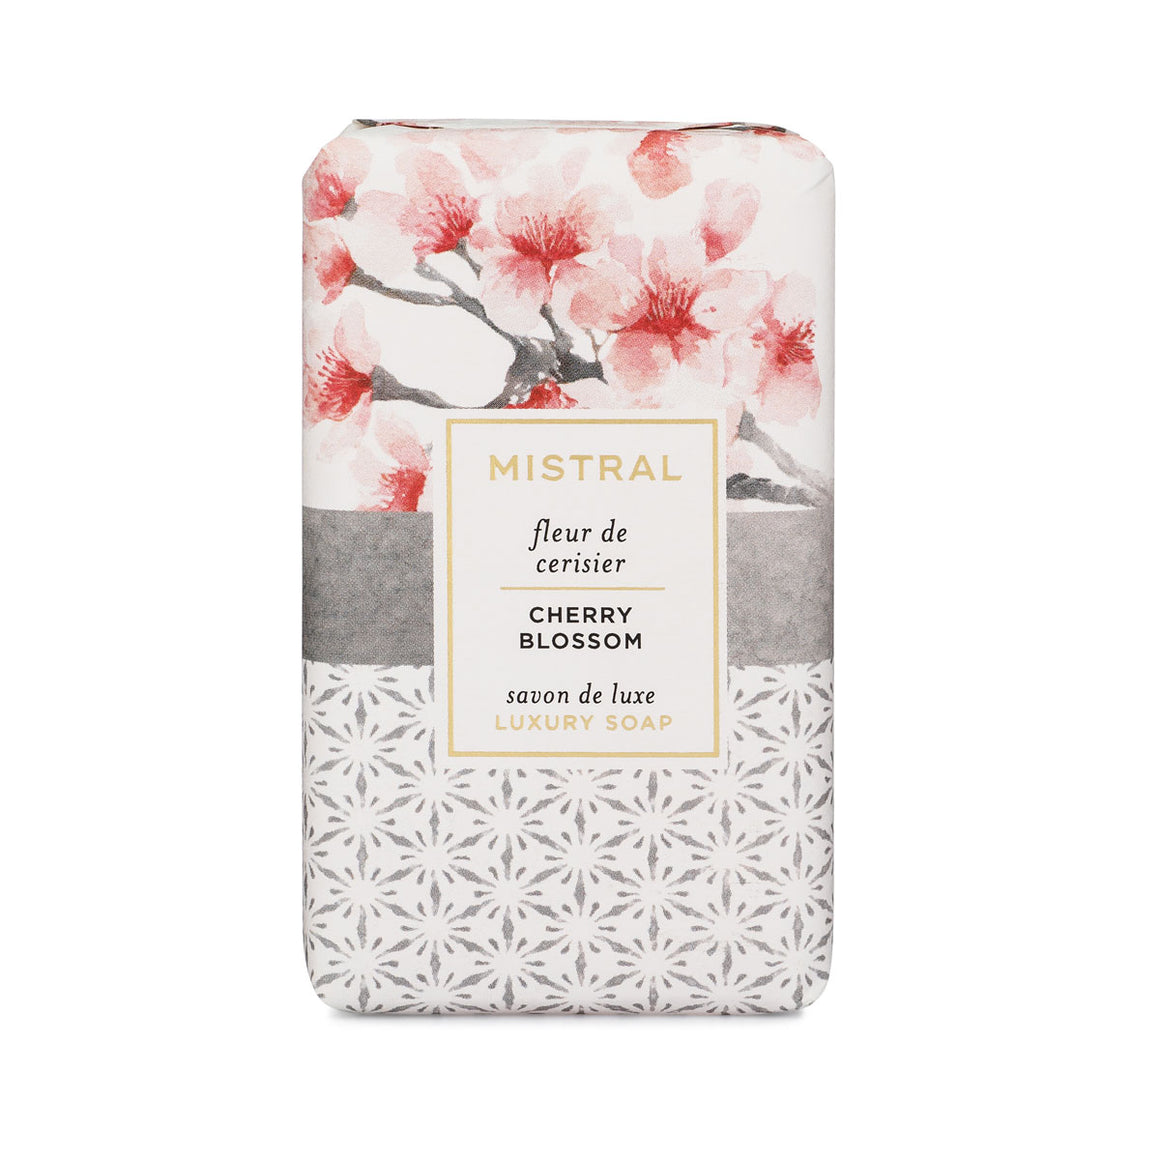 Cherry Blossom Papiers Fantaisie Bar Soap